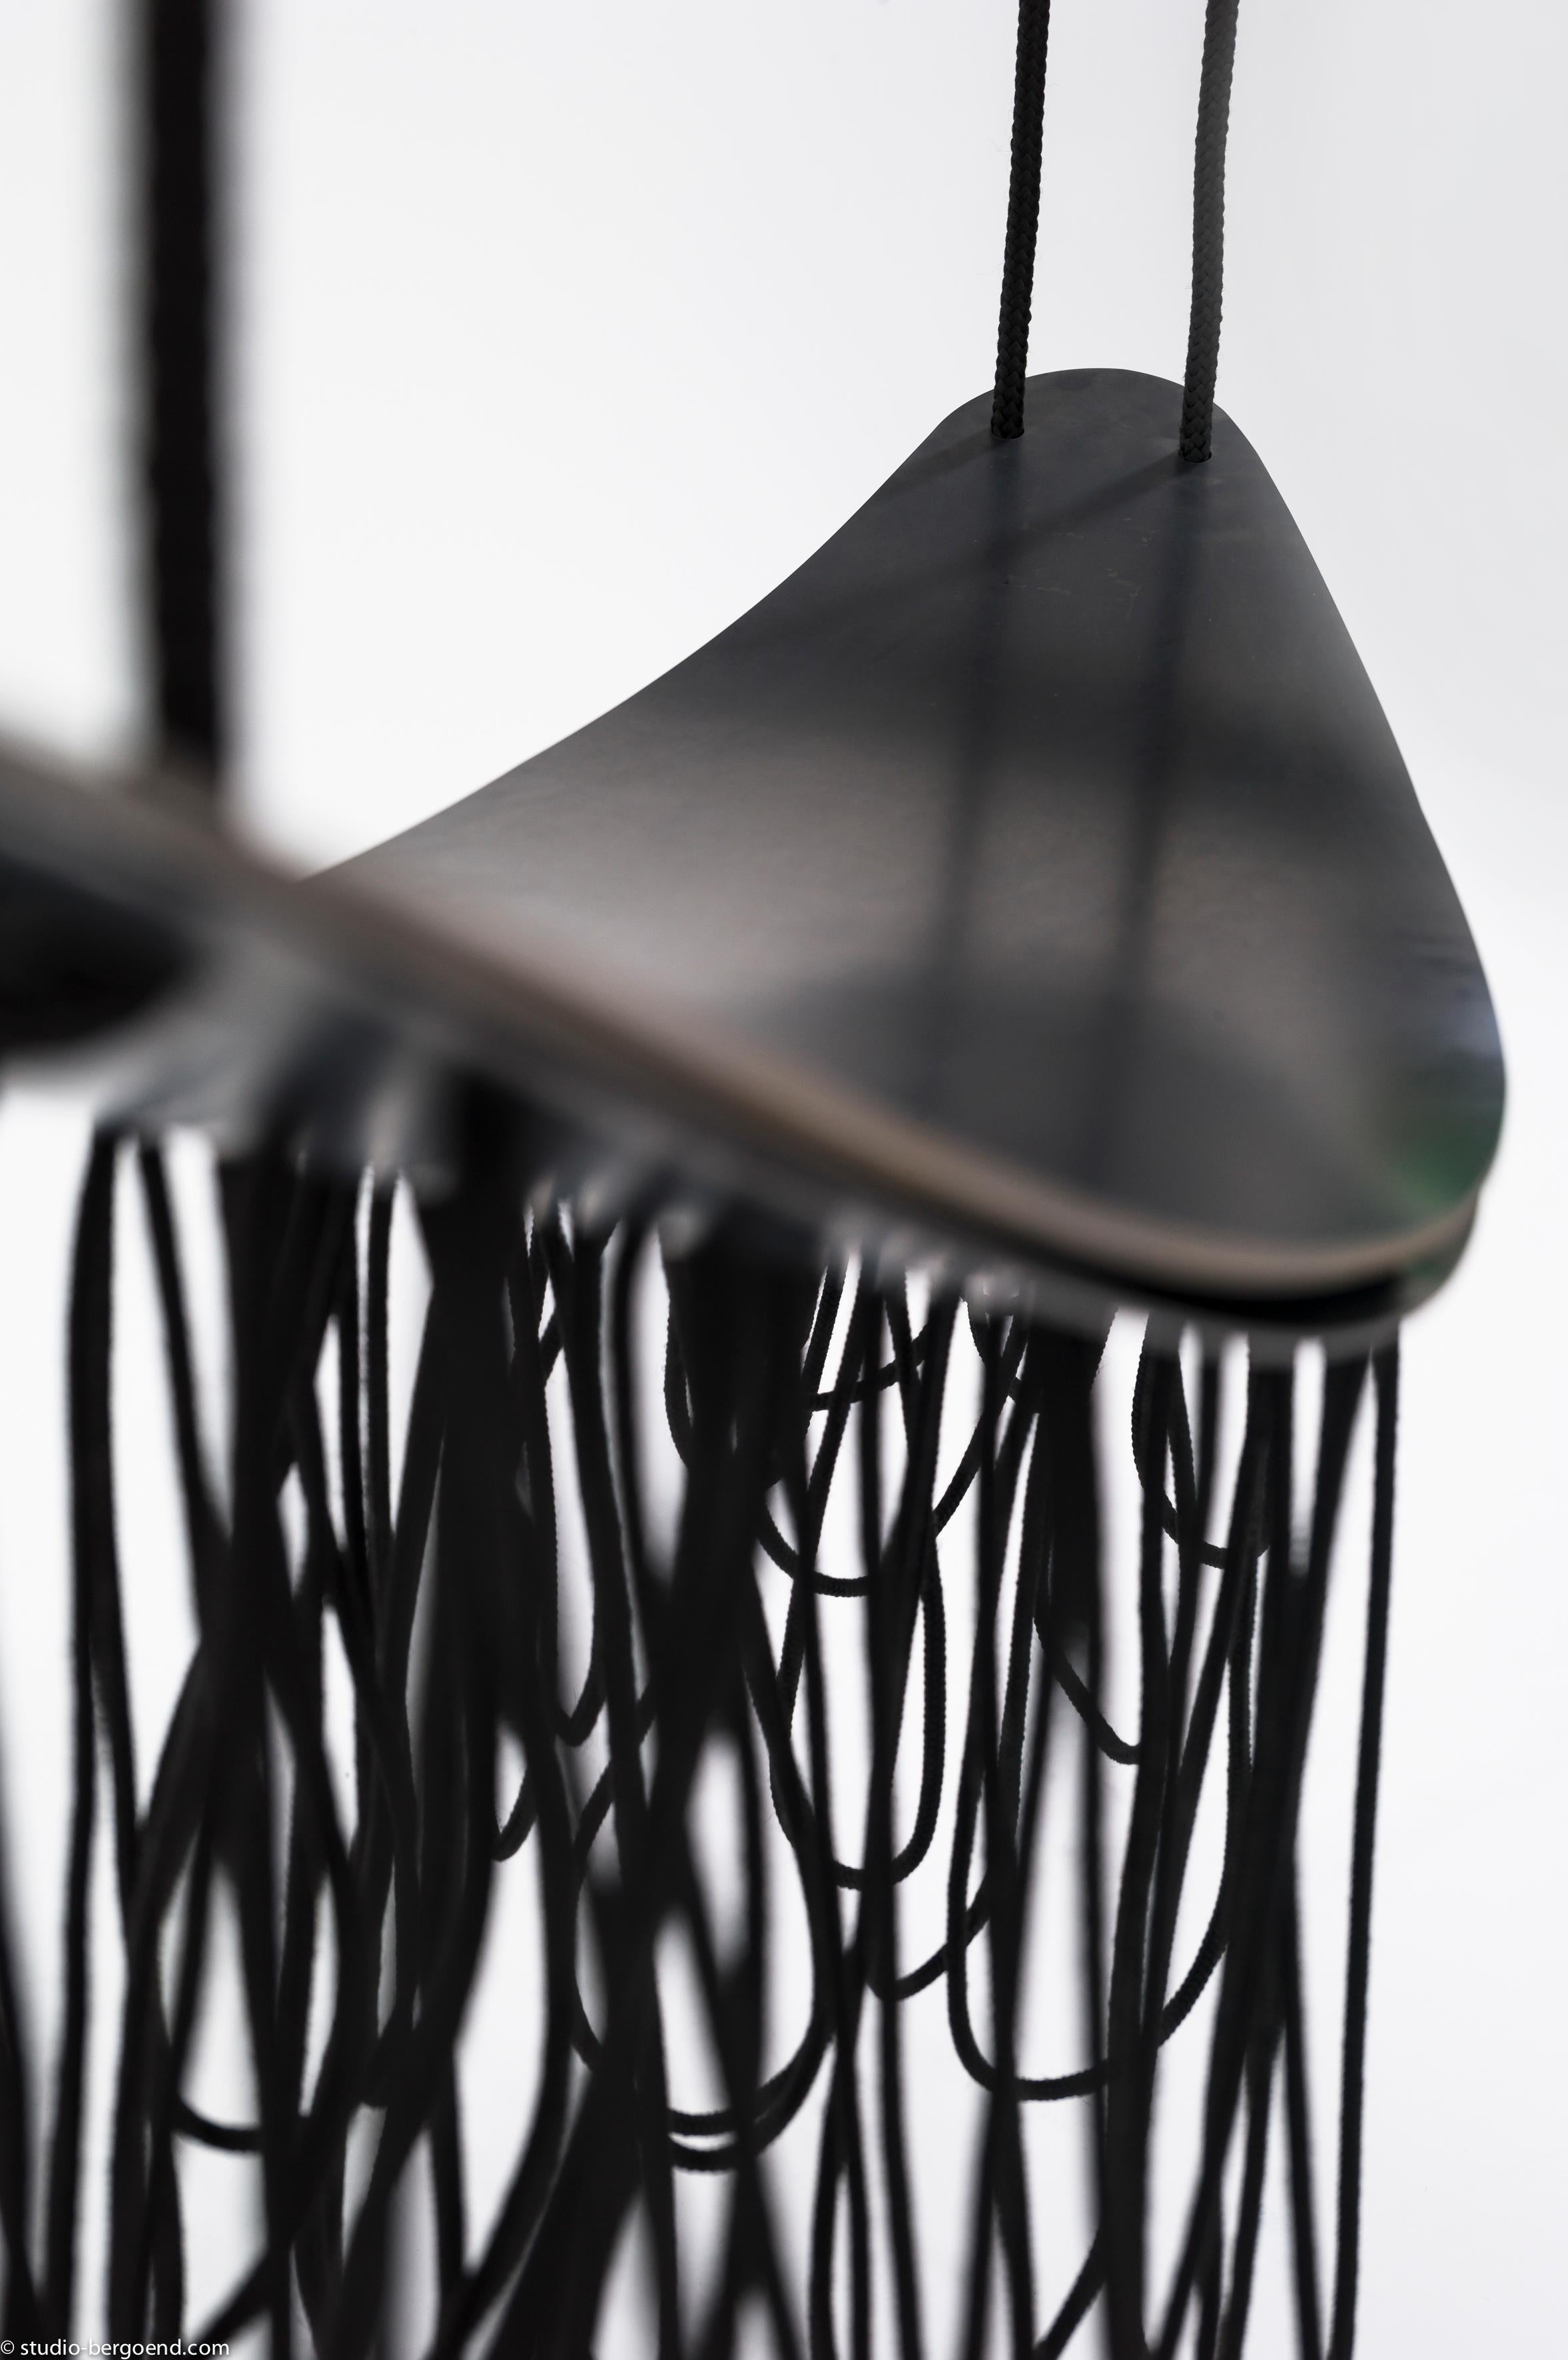 Hänge-Swing-Skulptur von Isola Design
Abmessungen: B 30,5 x H 105 cm 
Andere Abmessungen verfügbar: B 27 x H 82 cm
MATERIALIEN: Pulverbeschichtetes Metall und Polypropylenseil .
Erhältlich in schwarz, weiß, khaki, blau-schwarz.

Leise und